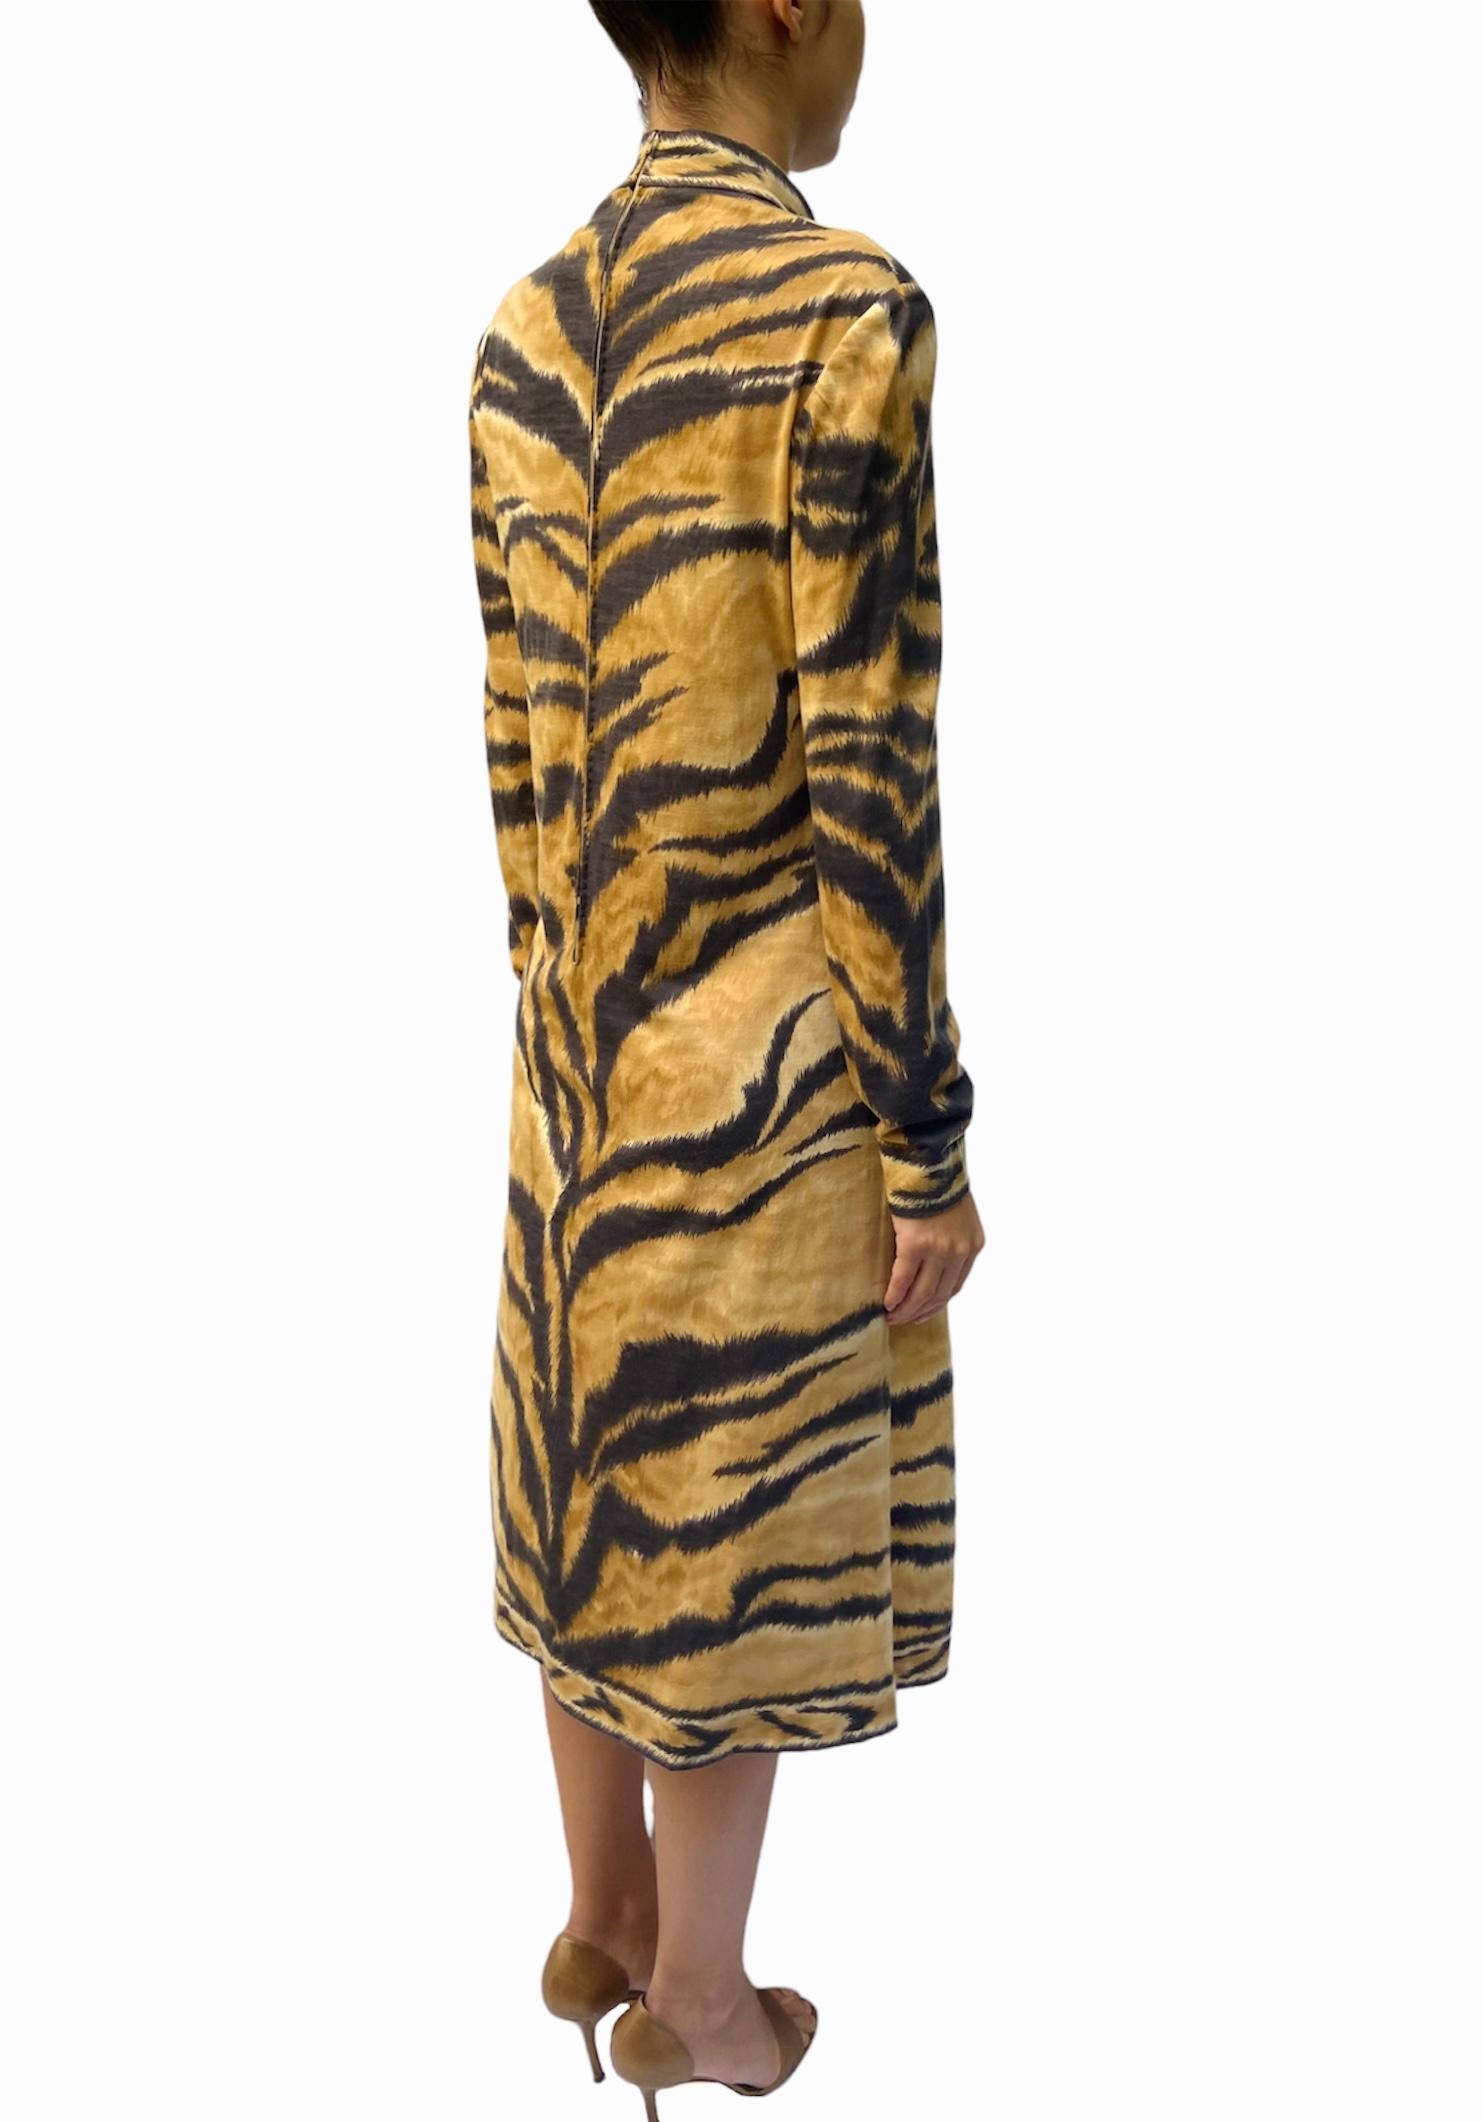 1980S LEONARD Wool Jersey Tiger Striped Long Sleeve Dress 3